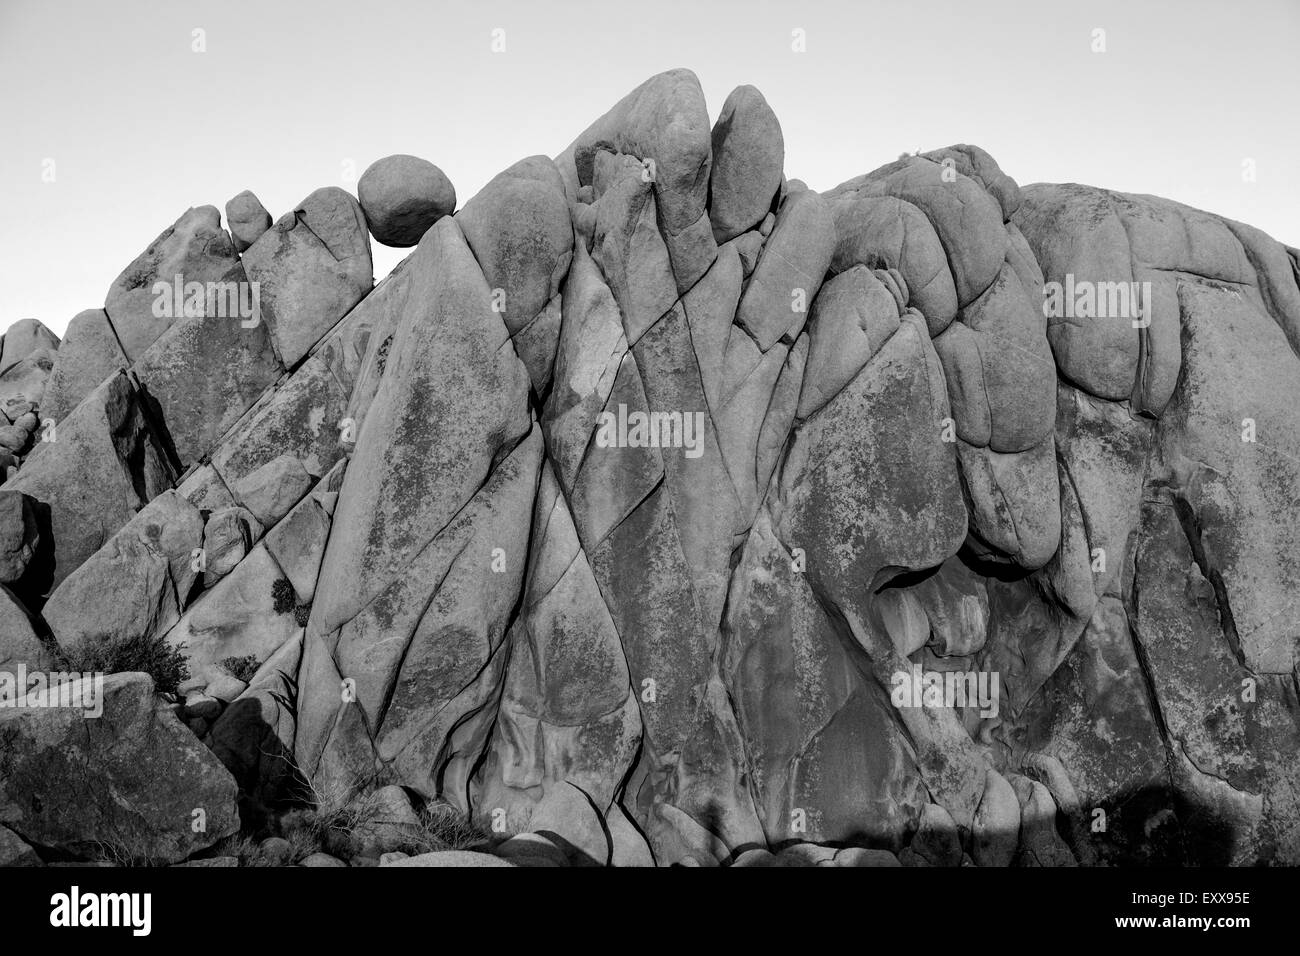 Letzten Licht auf Jumbo Rocks im Joshua Tree National Park in der kalifornischen Mojave-Wüste. Stockfoto